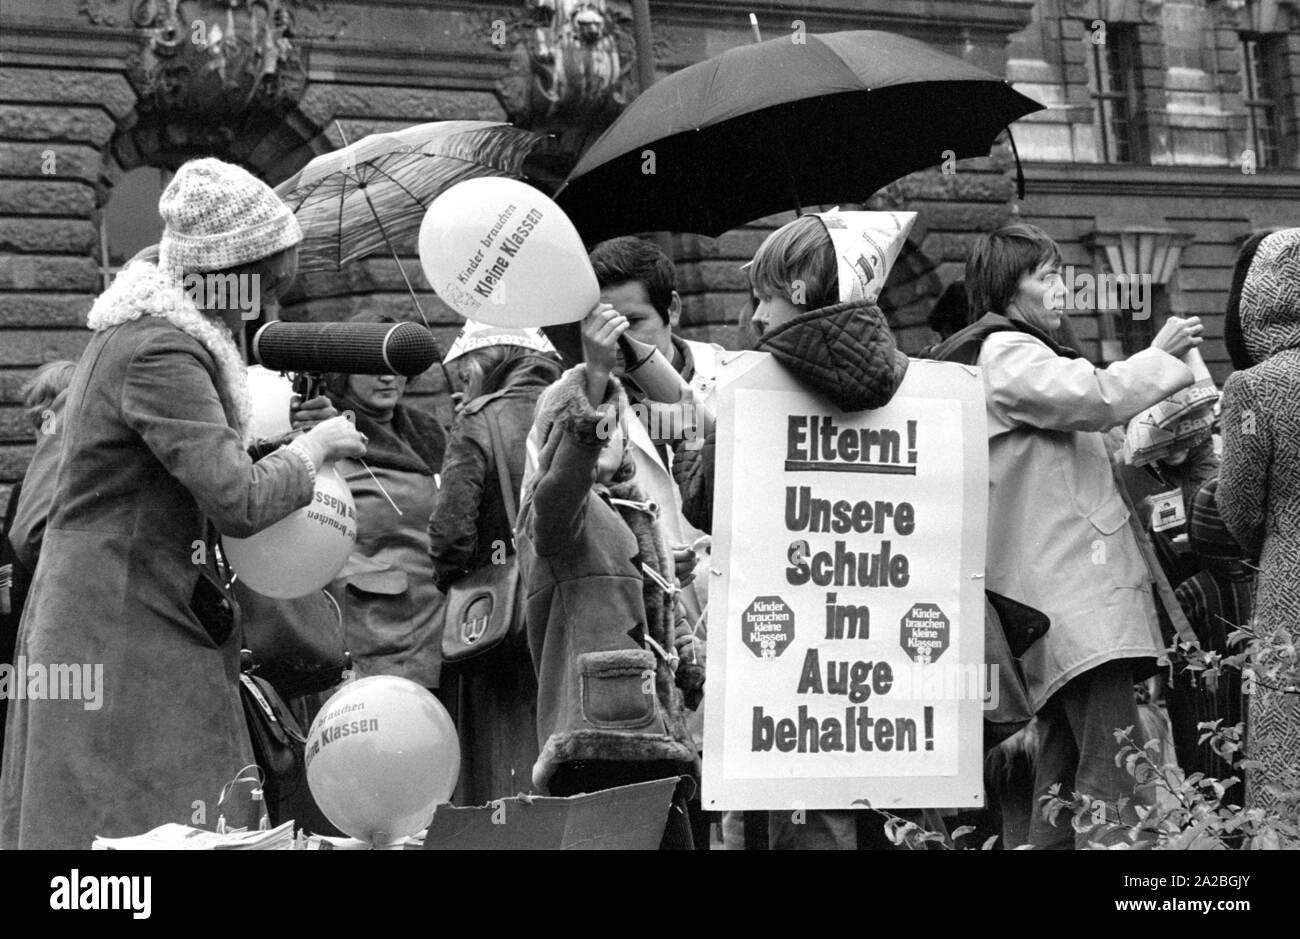 In München, Eltern und Kinder demonstrieren für bessere Lernbedingungen in deutschen Schulen mit Slogans wie "Kinder brauchen kleine Klassen' und 'Eltern! Ein Auge auf unsere Schule!". Stockfoto